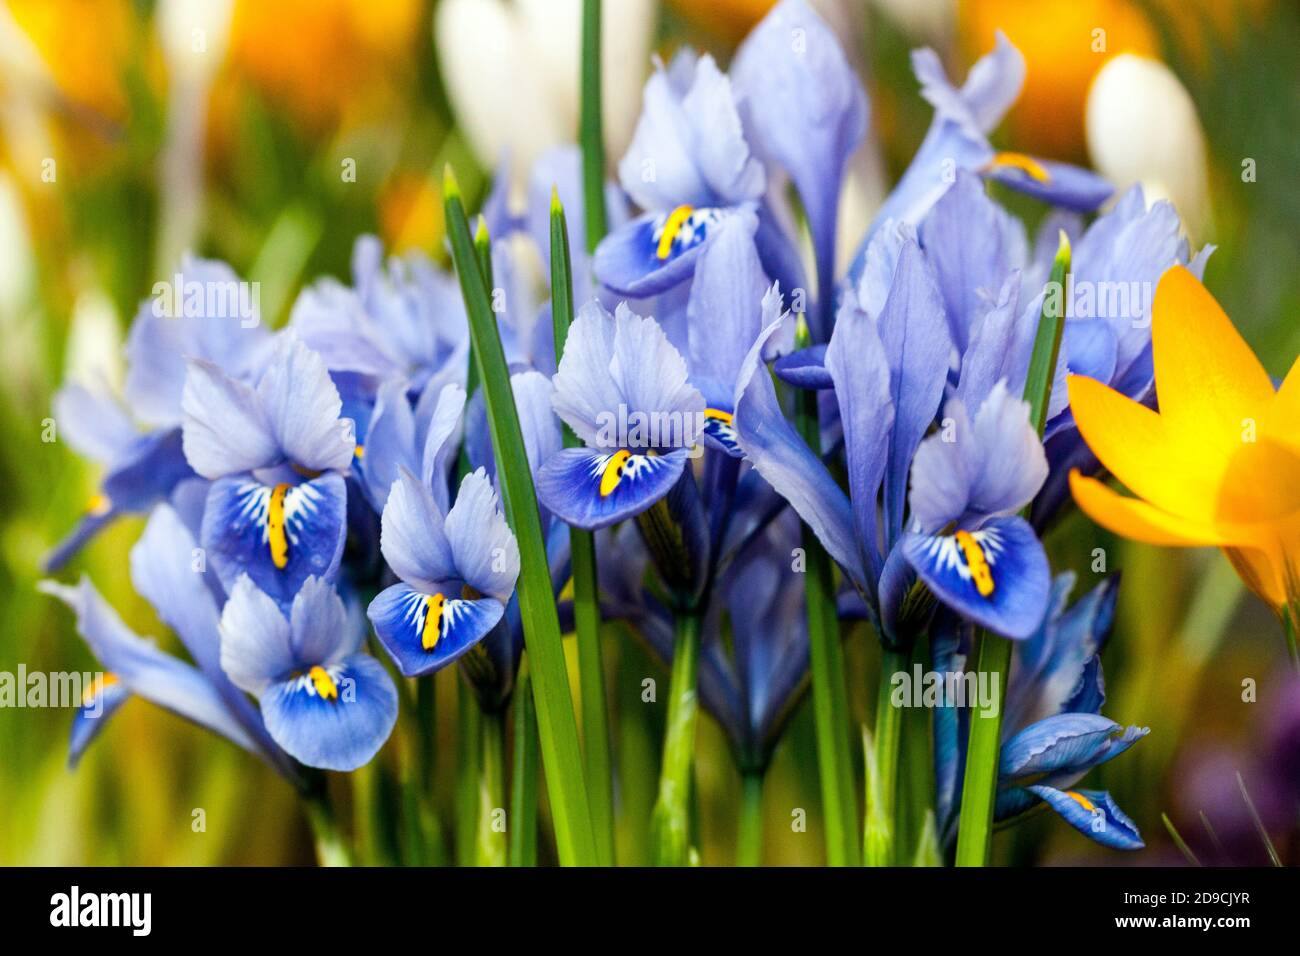 Fleur d'iris bleu Crocus fleurs de jardin de printemps en mars Banque D'Images